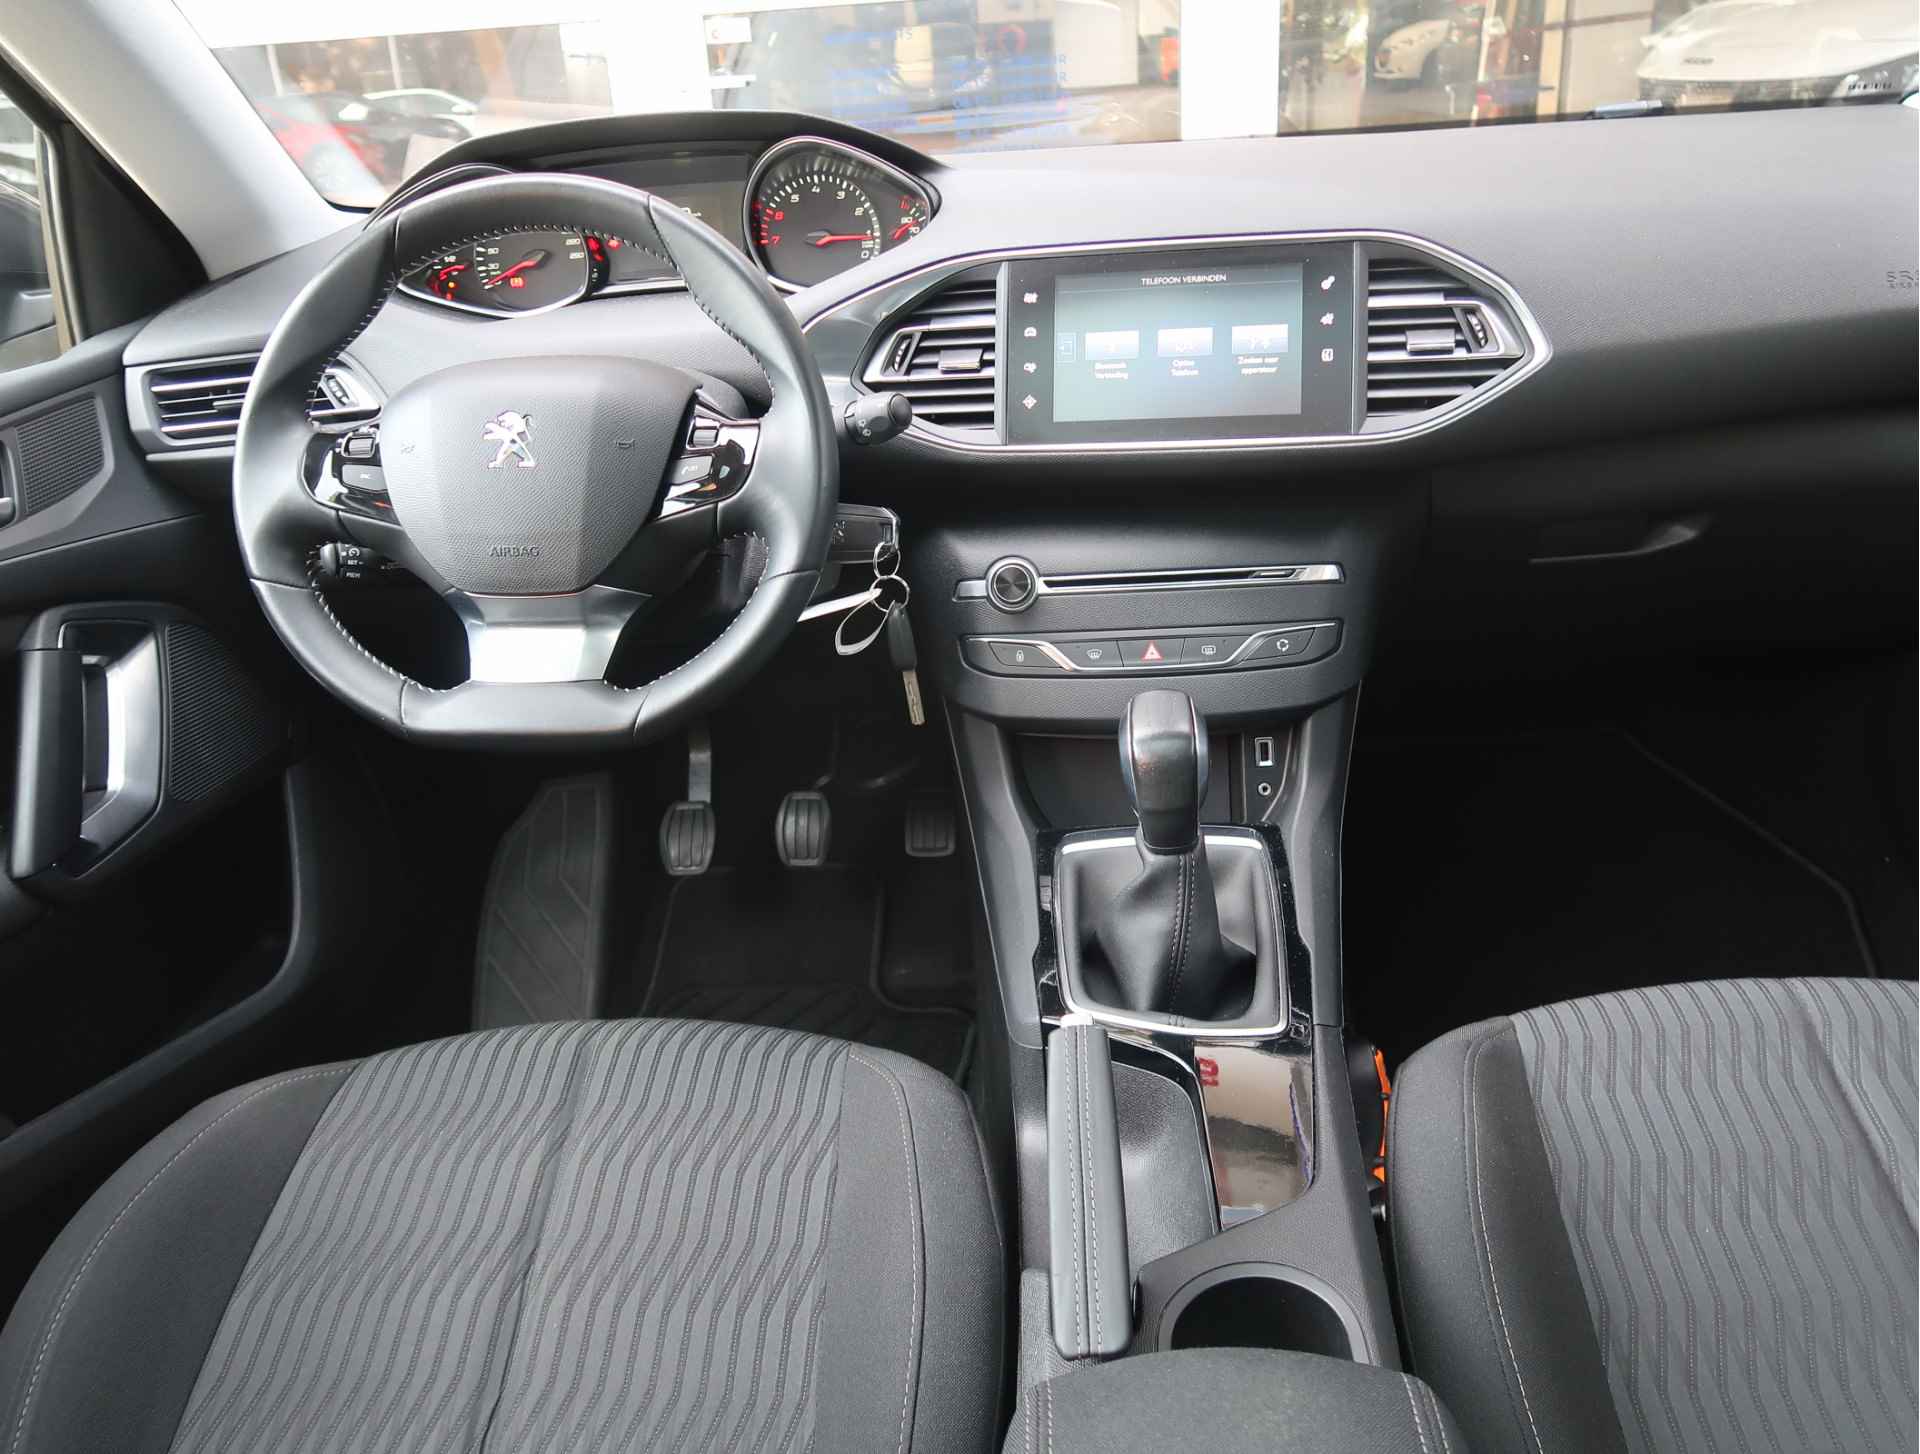 Peugeot 308 SW 110 PK Benzine * Panoramadak * Navigatie * L.M. Velgen * DAB+ Radio + CD * Cruise & Climate Control * Voor en achter Parkeersensoren* Vierseizoenenbanden * - 9/45